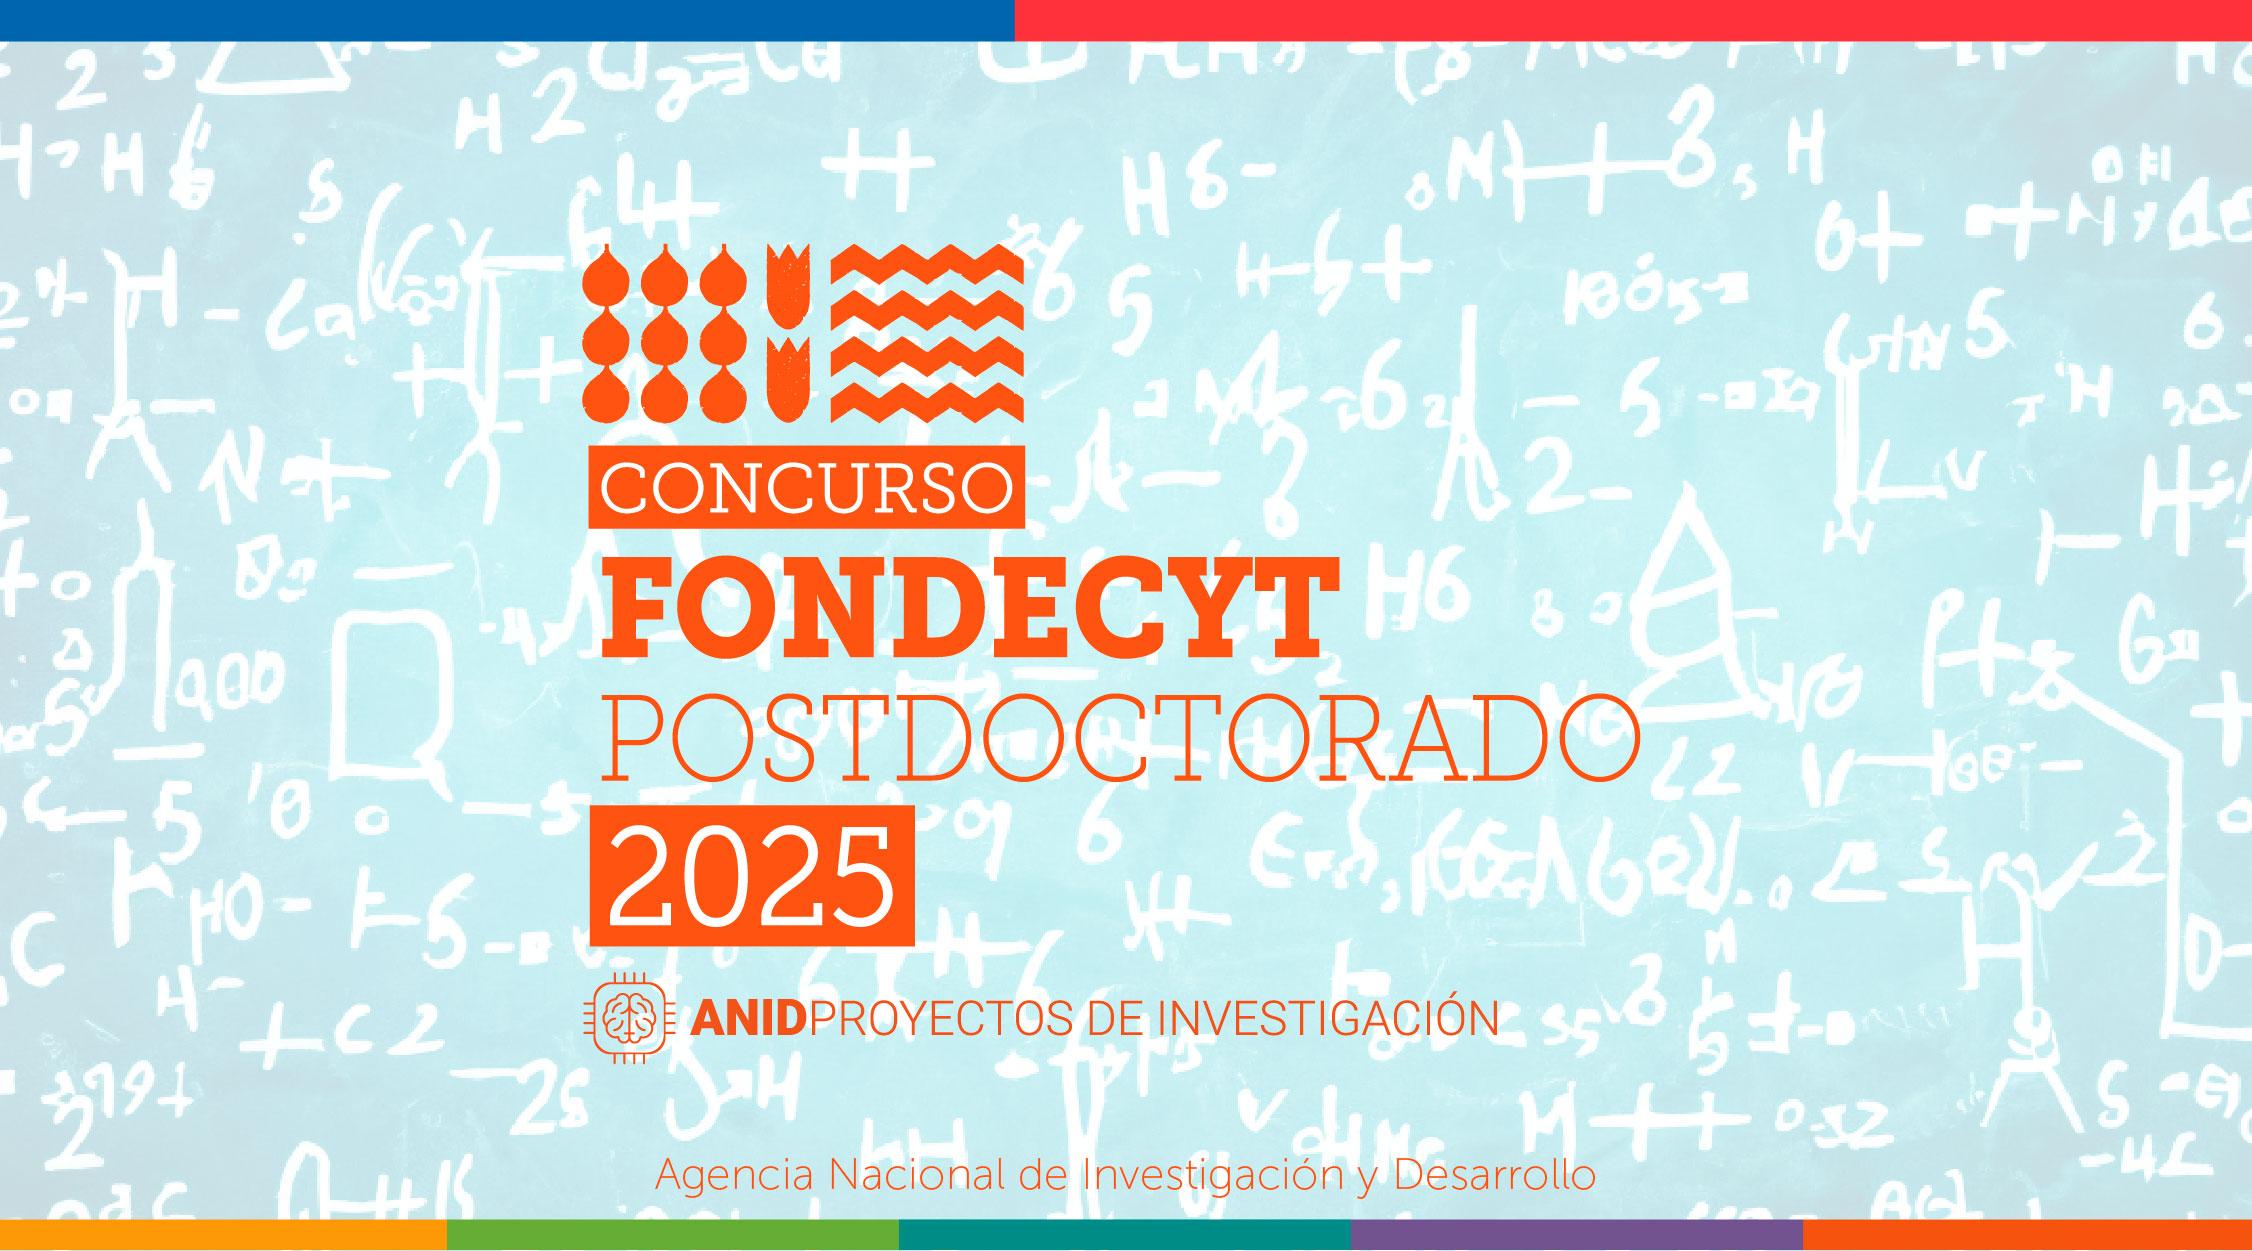 Fondecyt postdoctorado 2025